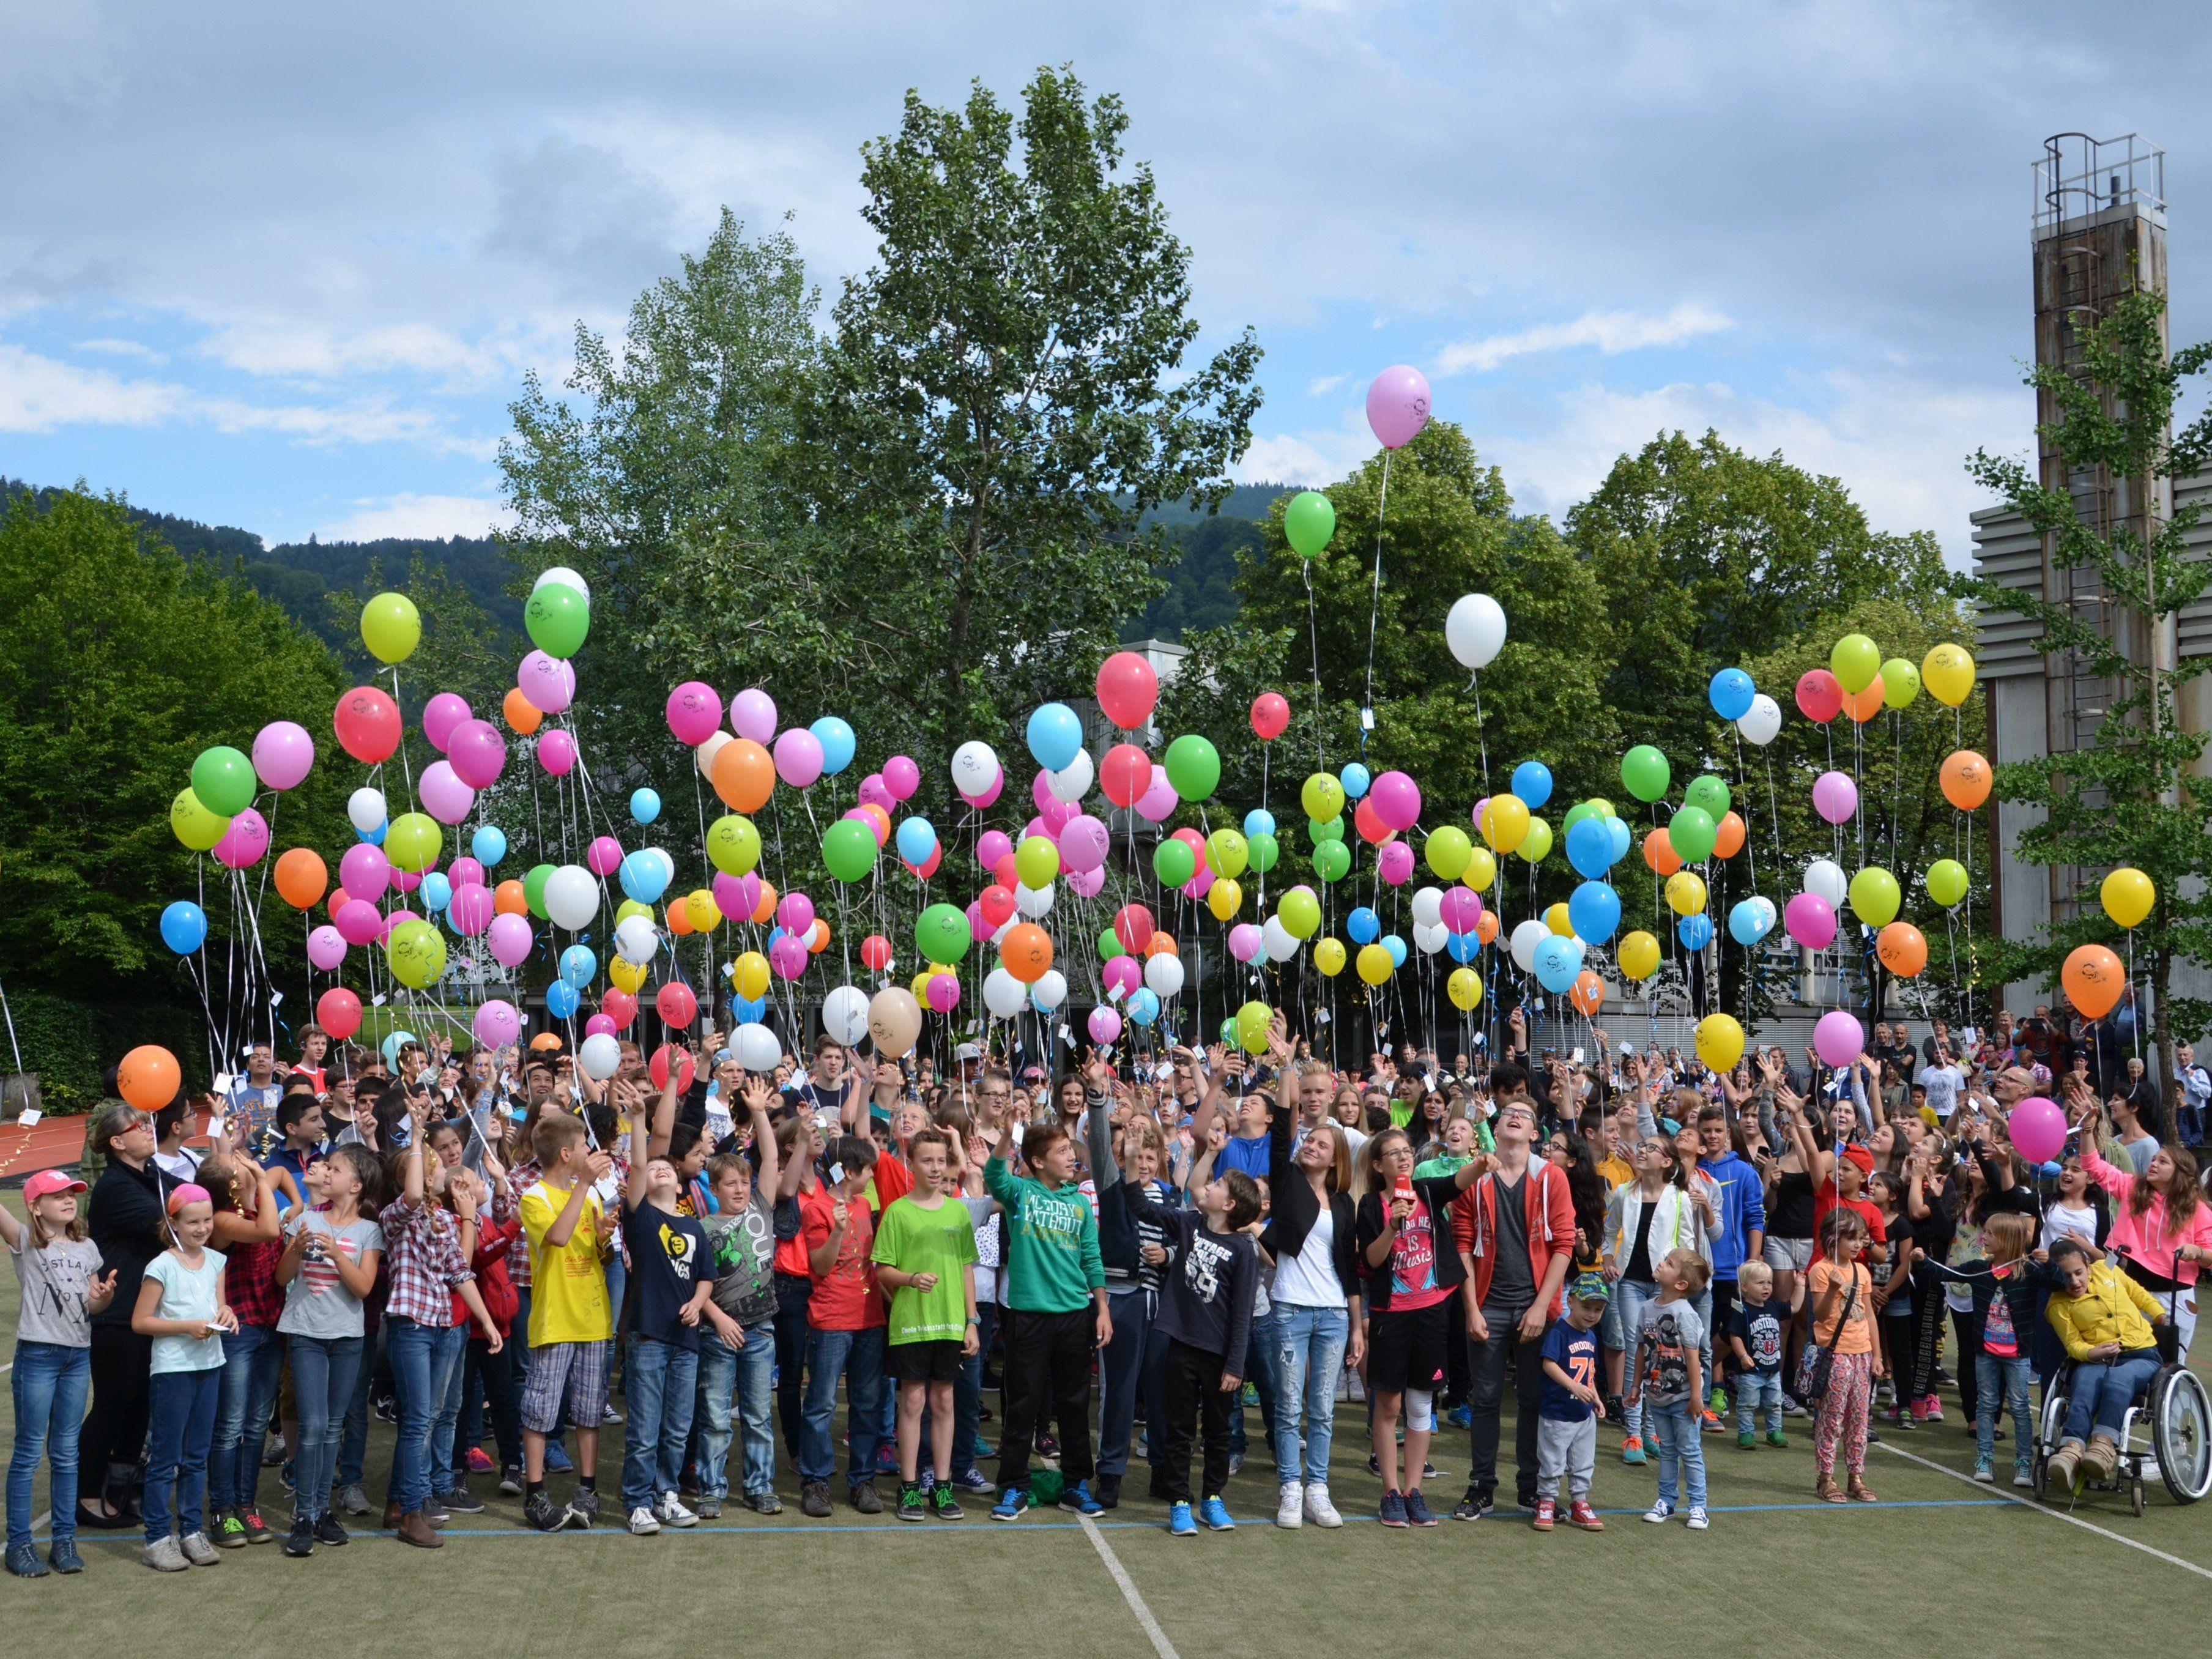 Höhepunkt des großen Schulfestes in der MS Haselstauden war das bunte Luftballonmeer, das in den Himmel geschickt wurde.